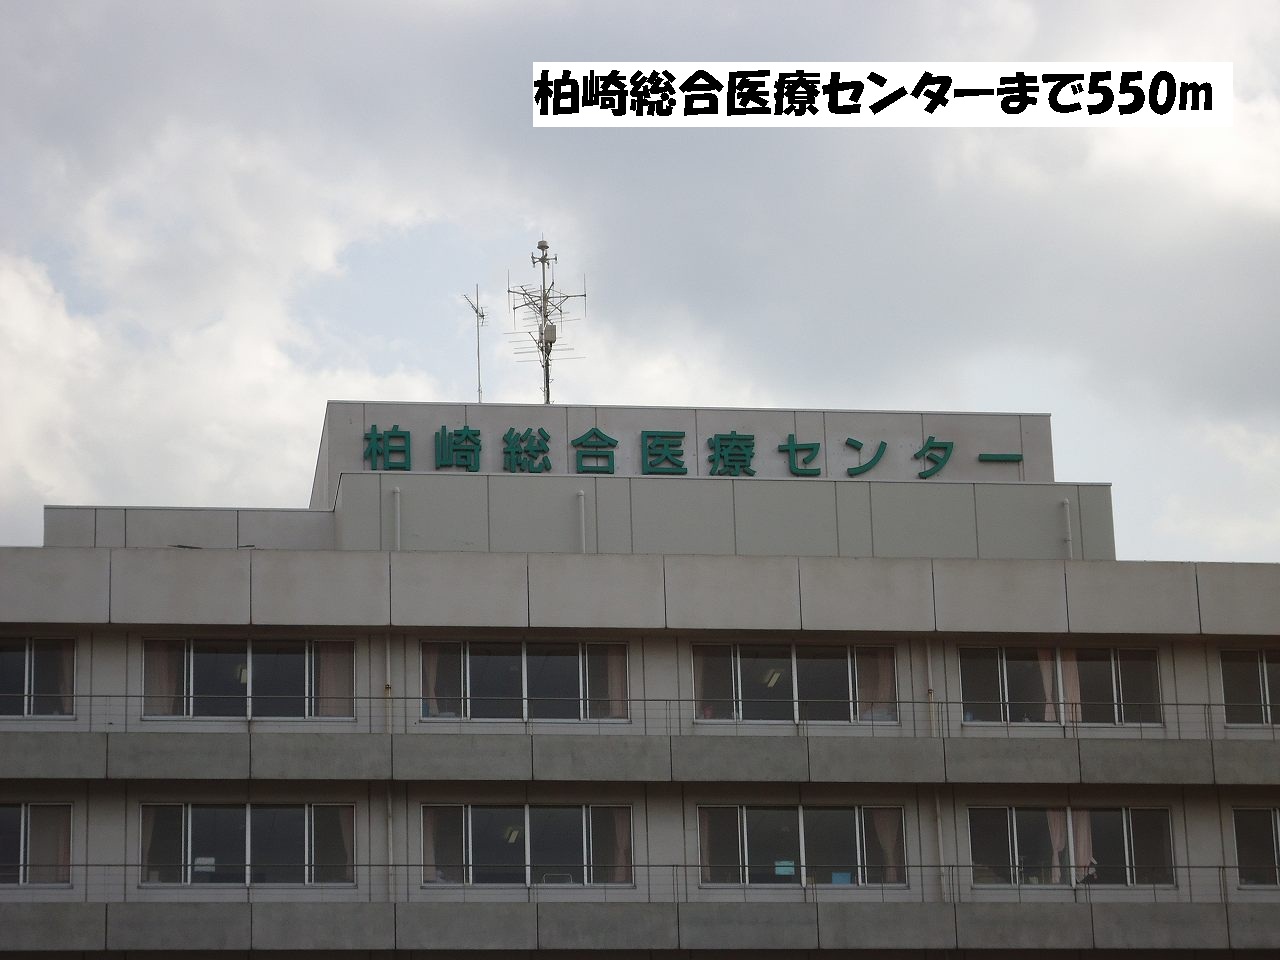 Hospital. Kashiwazaki General Medical Center until the (hospital) 550m